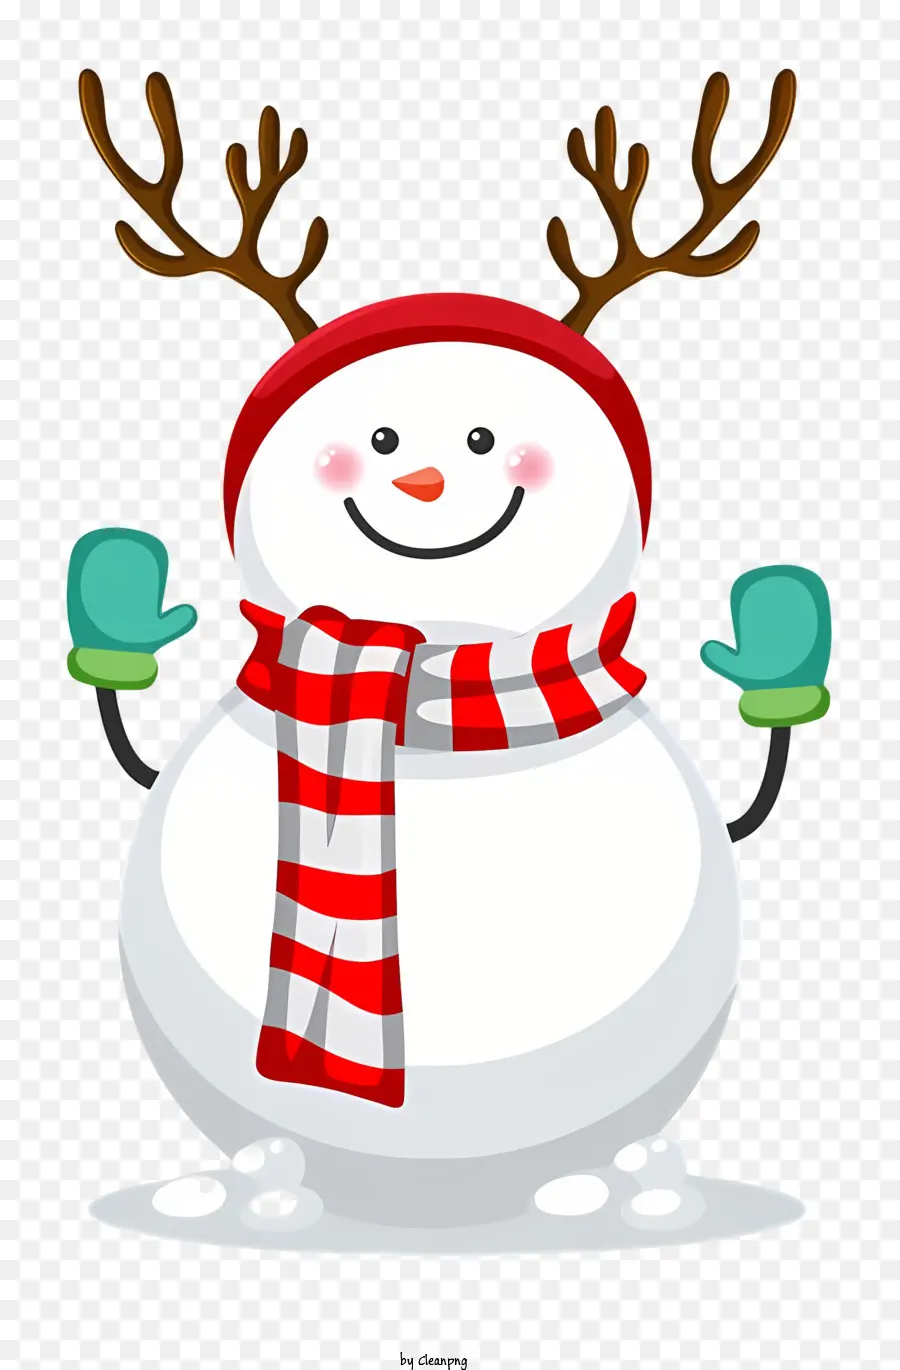 Pupazzo di neve - Snowman realistico con accessori a tema per le vacanze